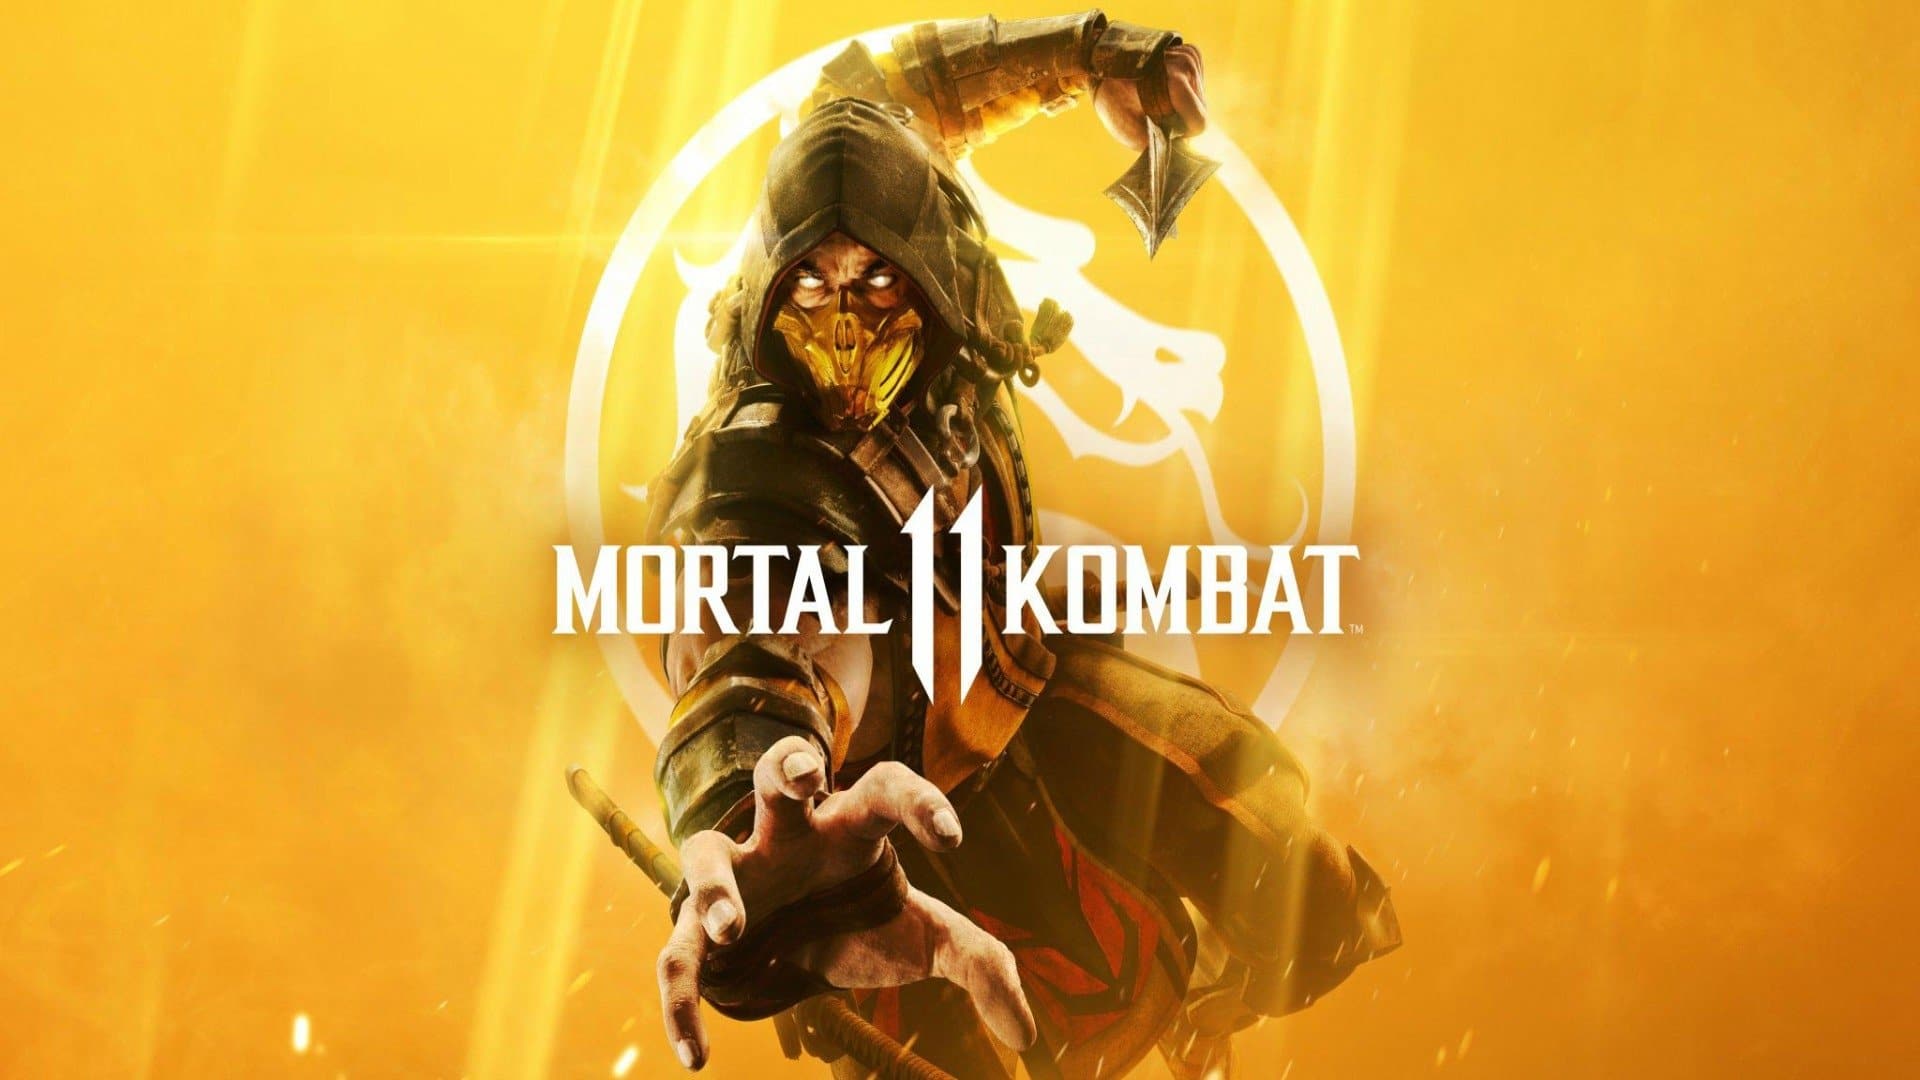 Una apuesta del co-creador de Mortal Kombat 11 podría forzarle a revelar el próximo luchador que se incluirá en forma de DLC